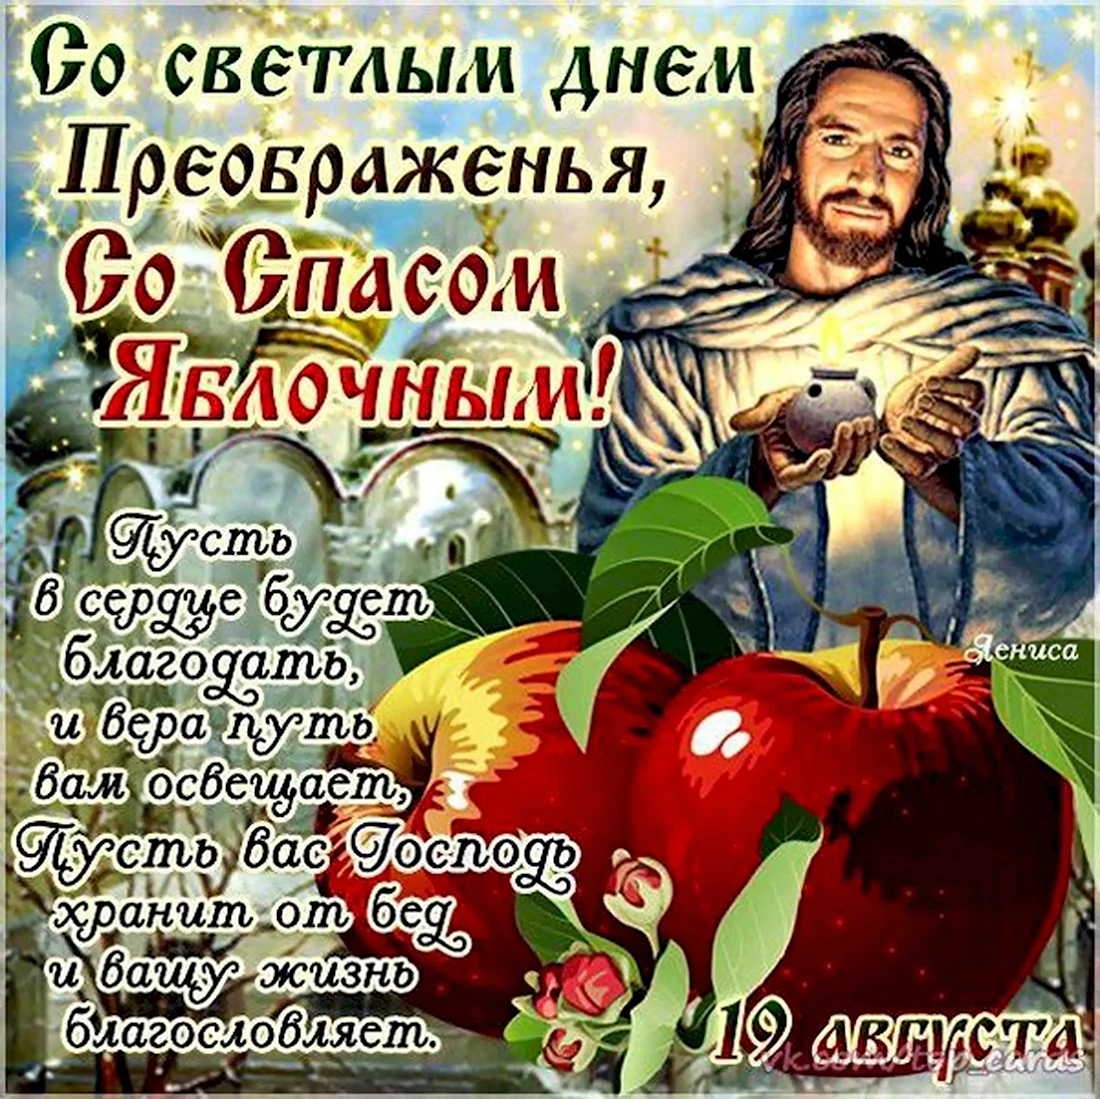 19 Августа Преображение Господне яблочный спас. Открытка на праздник